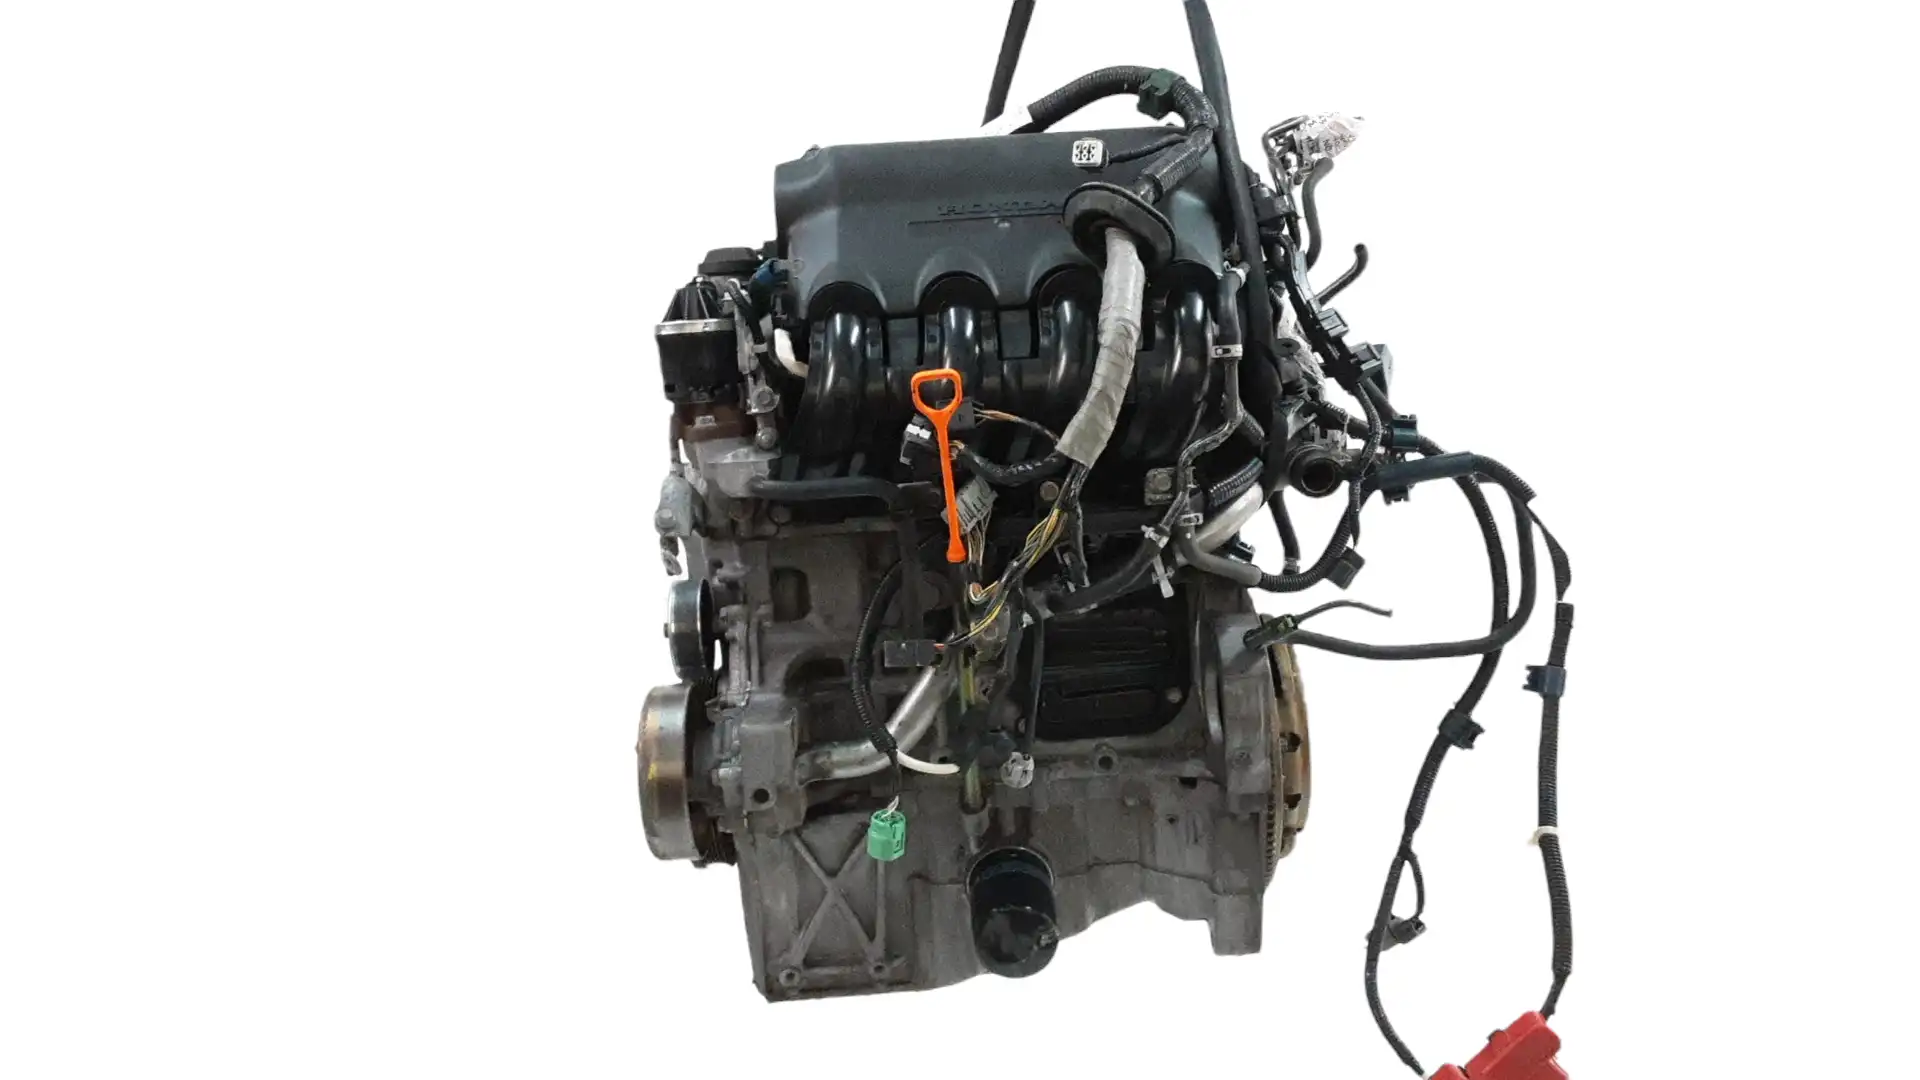 Κινητήρας-Μοτέρ HONDA JAZZ Hatchback / 5dr 2002 - 2005 ( GD ) 1.3 (GD1)  ( L13A1  ) (83 hp ) Βενζίνη #L13A1